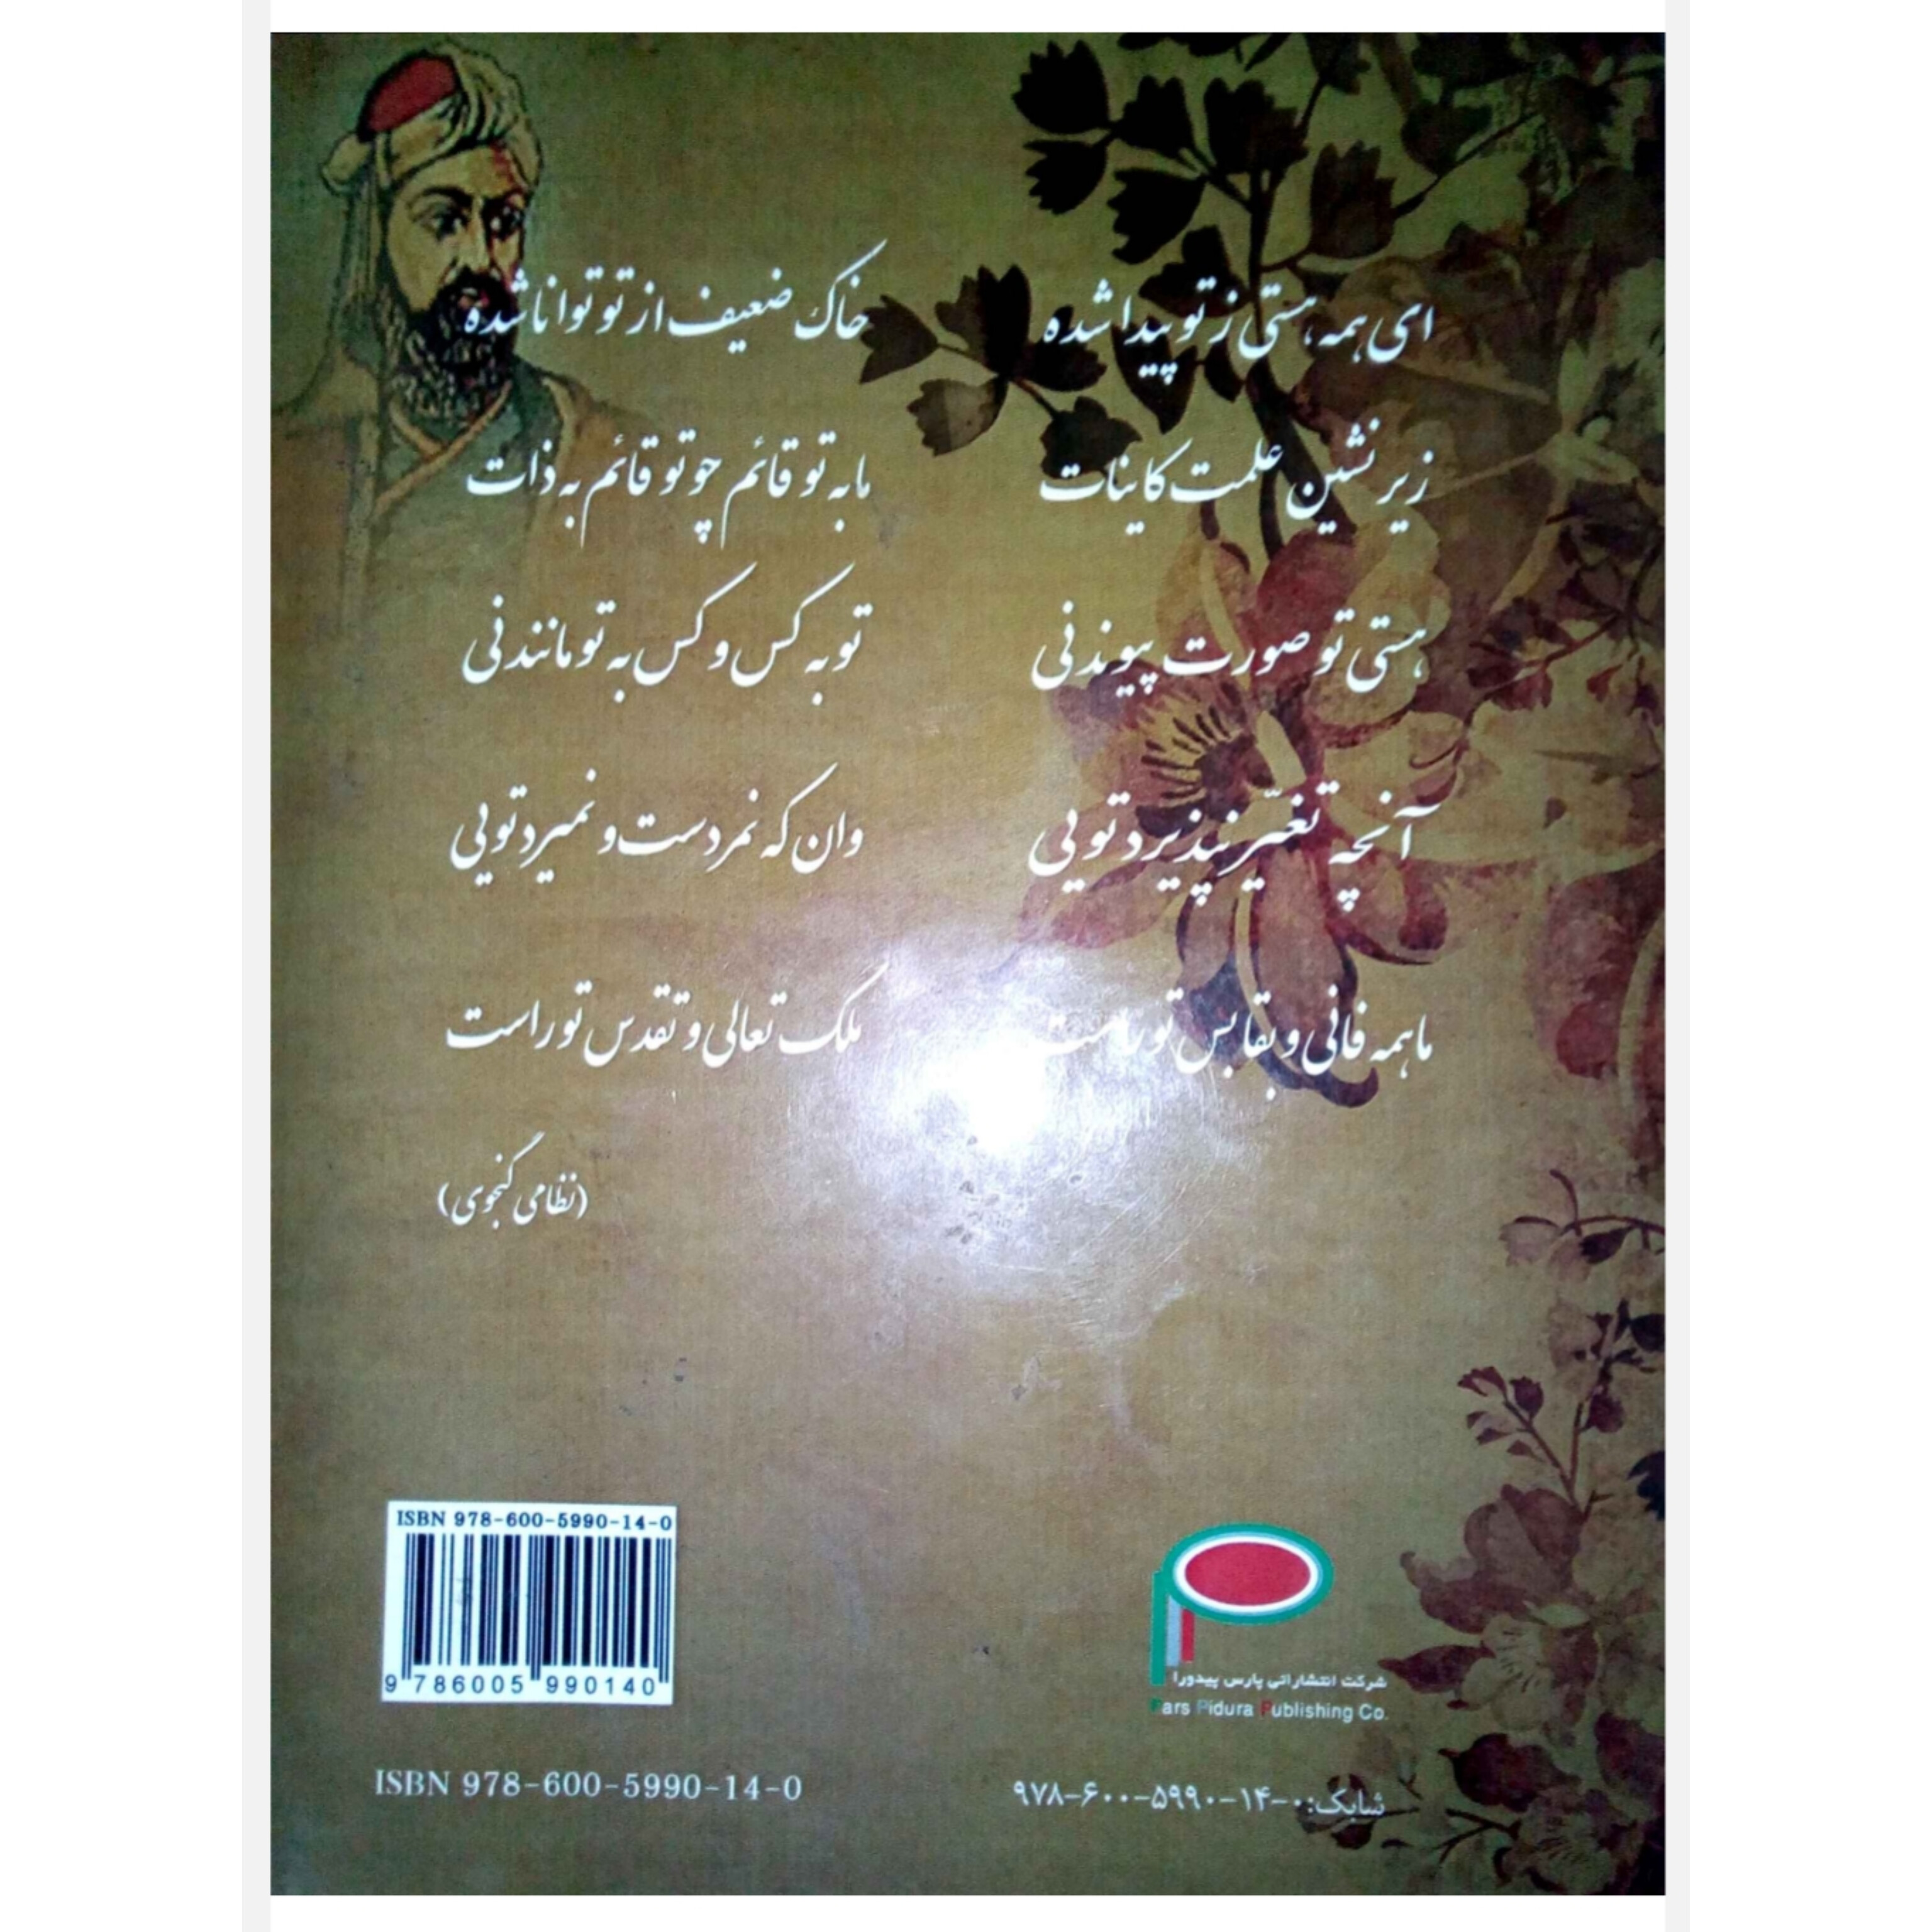 کتاب کامل راهنمای گزیده ره آوردی از ادب پارسی/ عباس مزرعتی